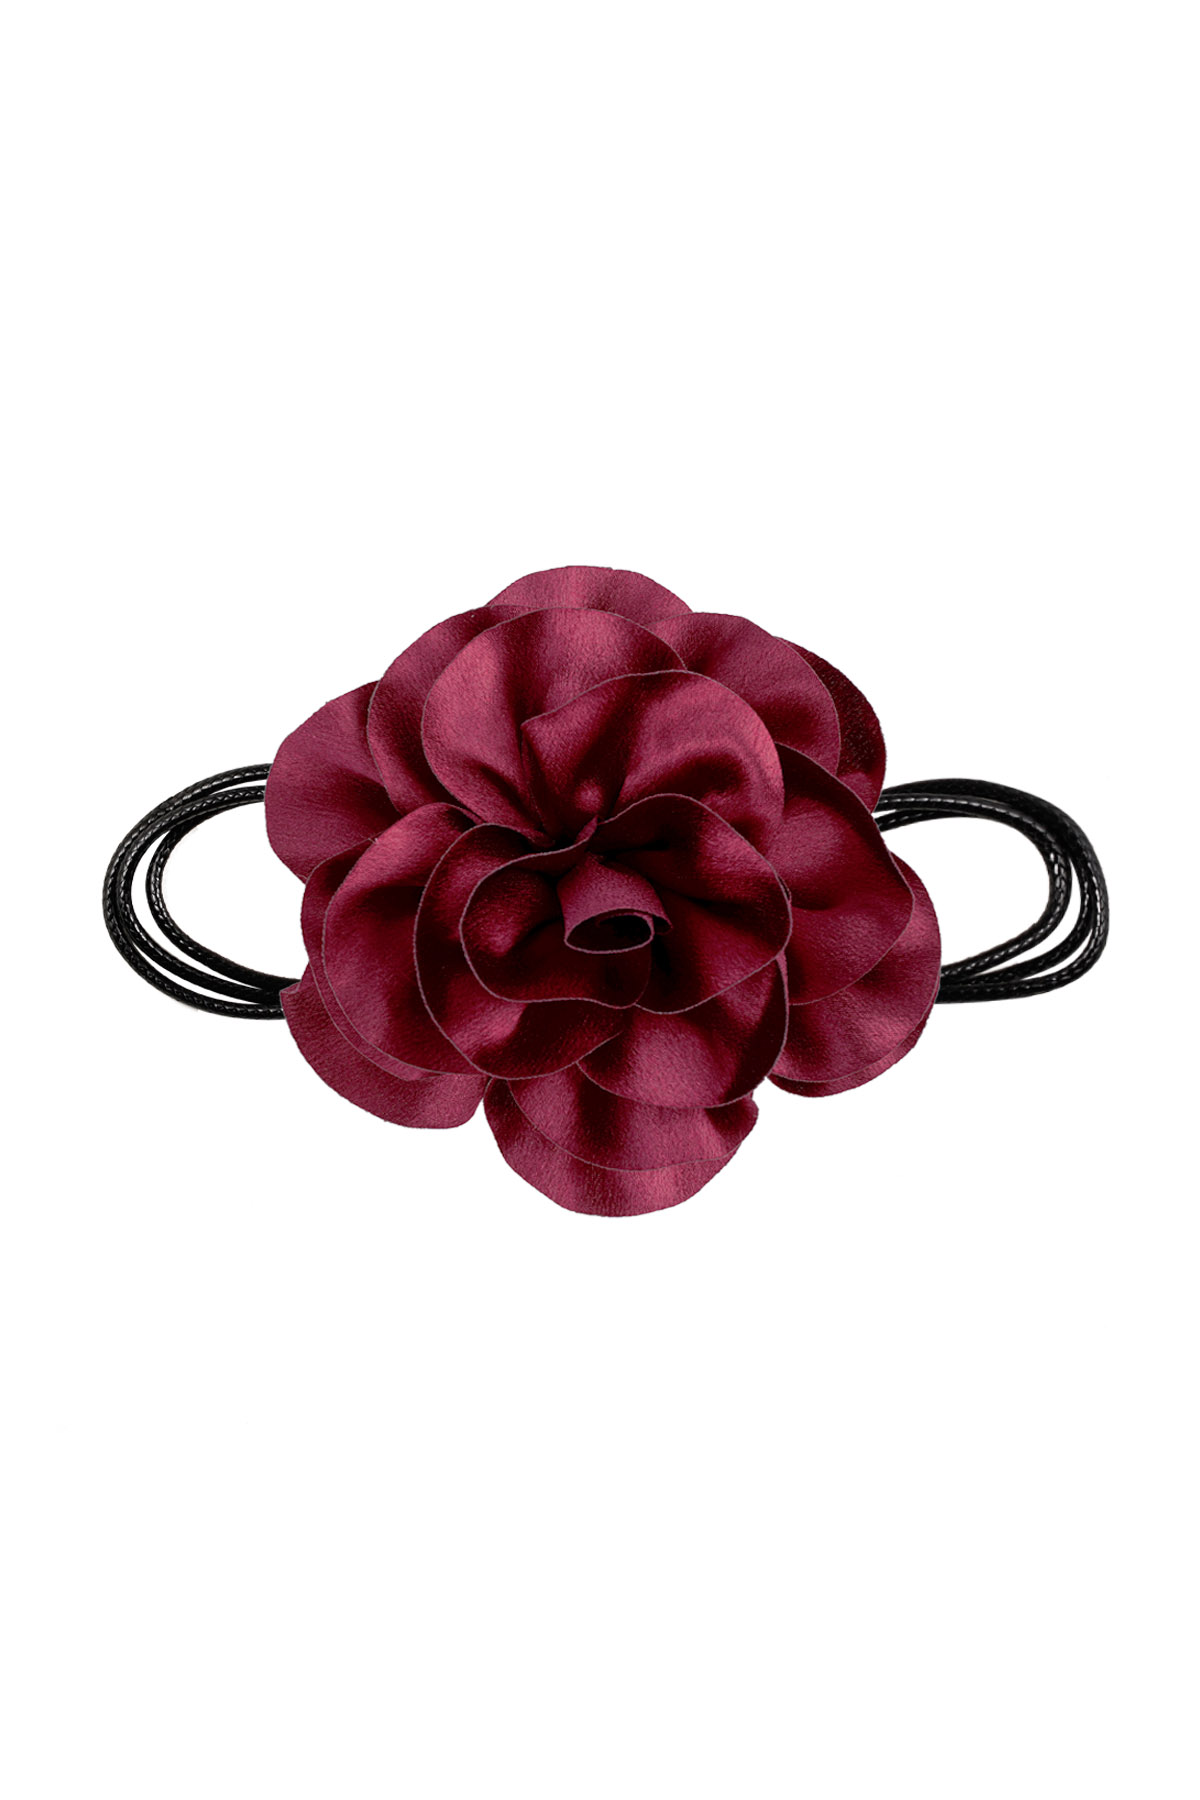 Collier corde fleur brillante - rouge foncé h5 